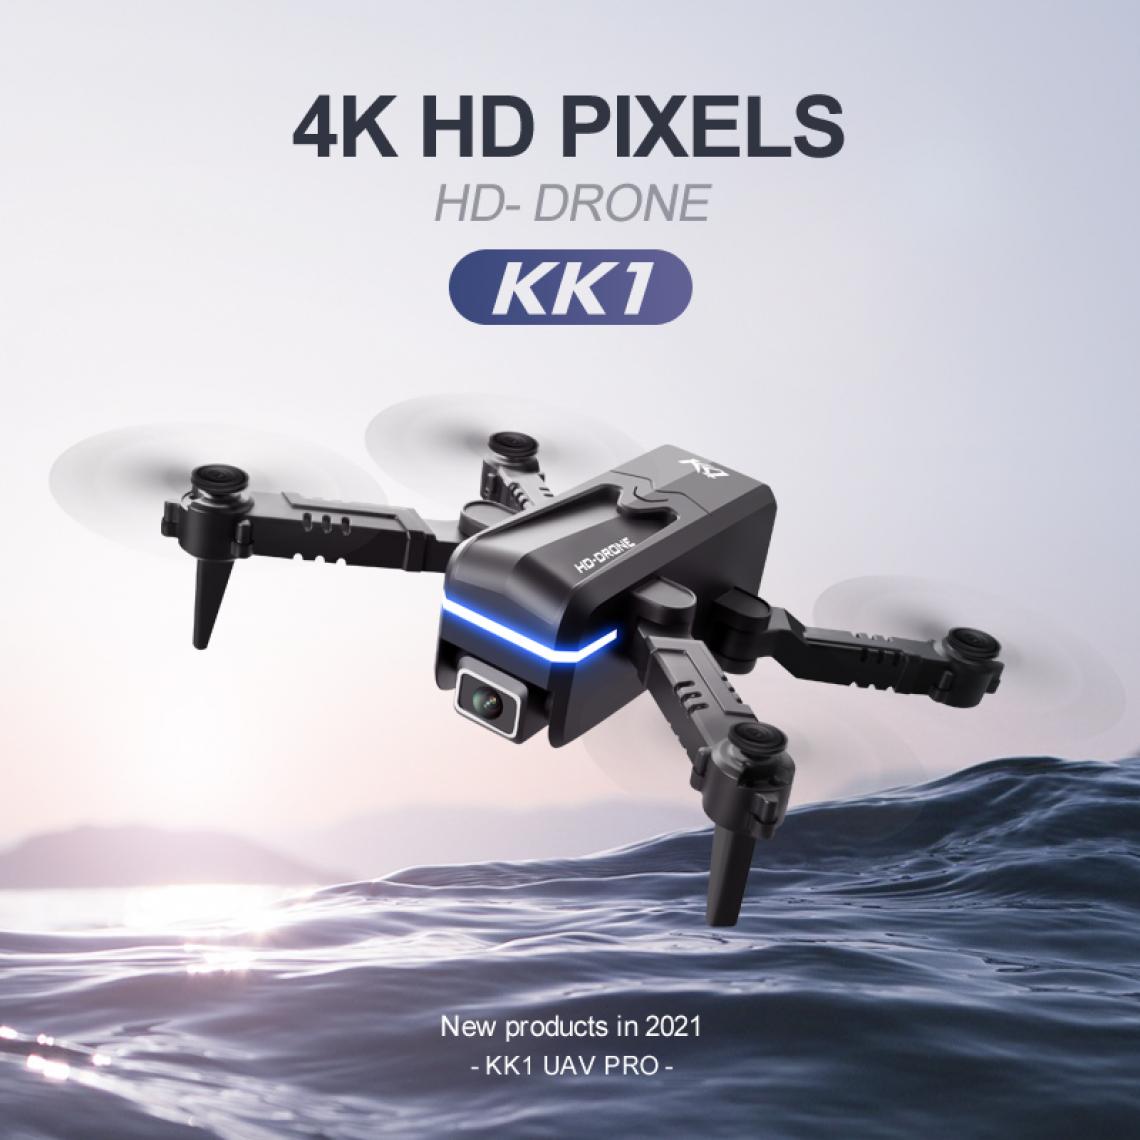 Universal - KK1 Mini Drone 4K HD Camera Pro RC Drone WiFi FPV Drone Toys Outdoor RC Quadcopter Fixed Altitude Helicopter Toys | RC Quadcopter(Le noir) - Drone